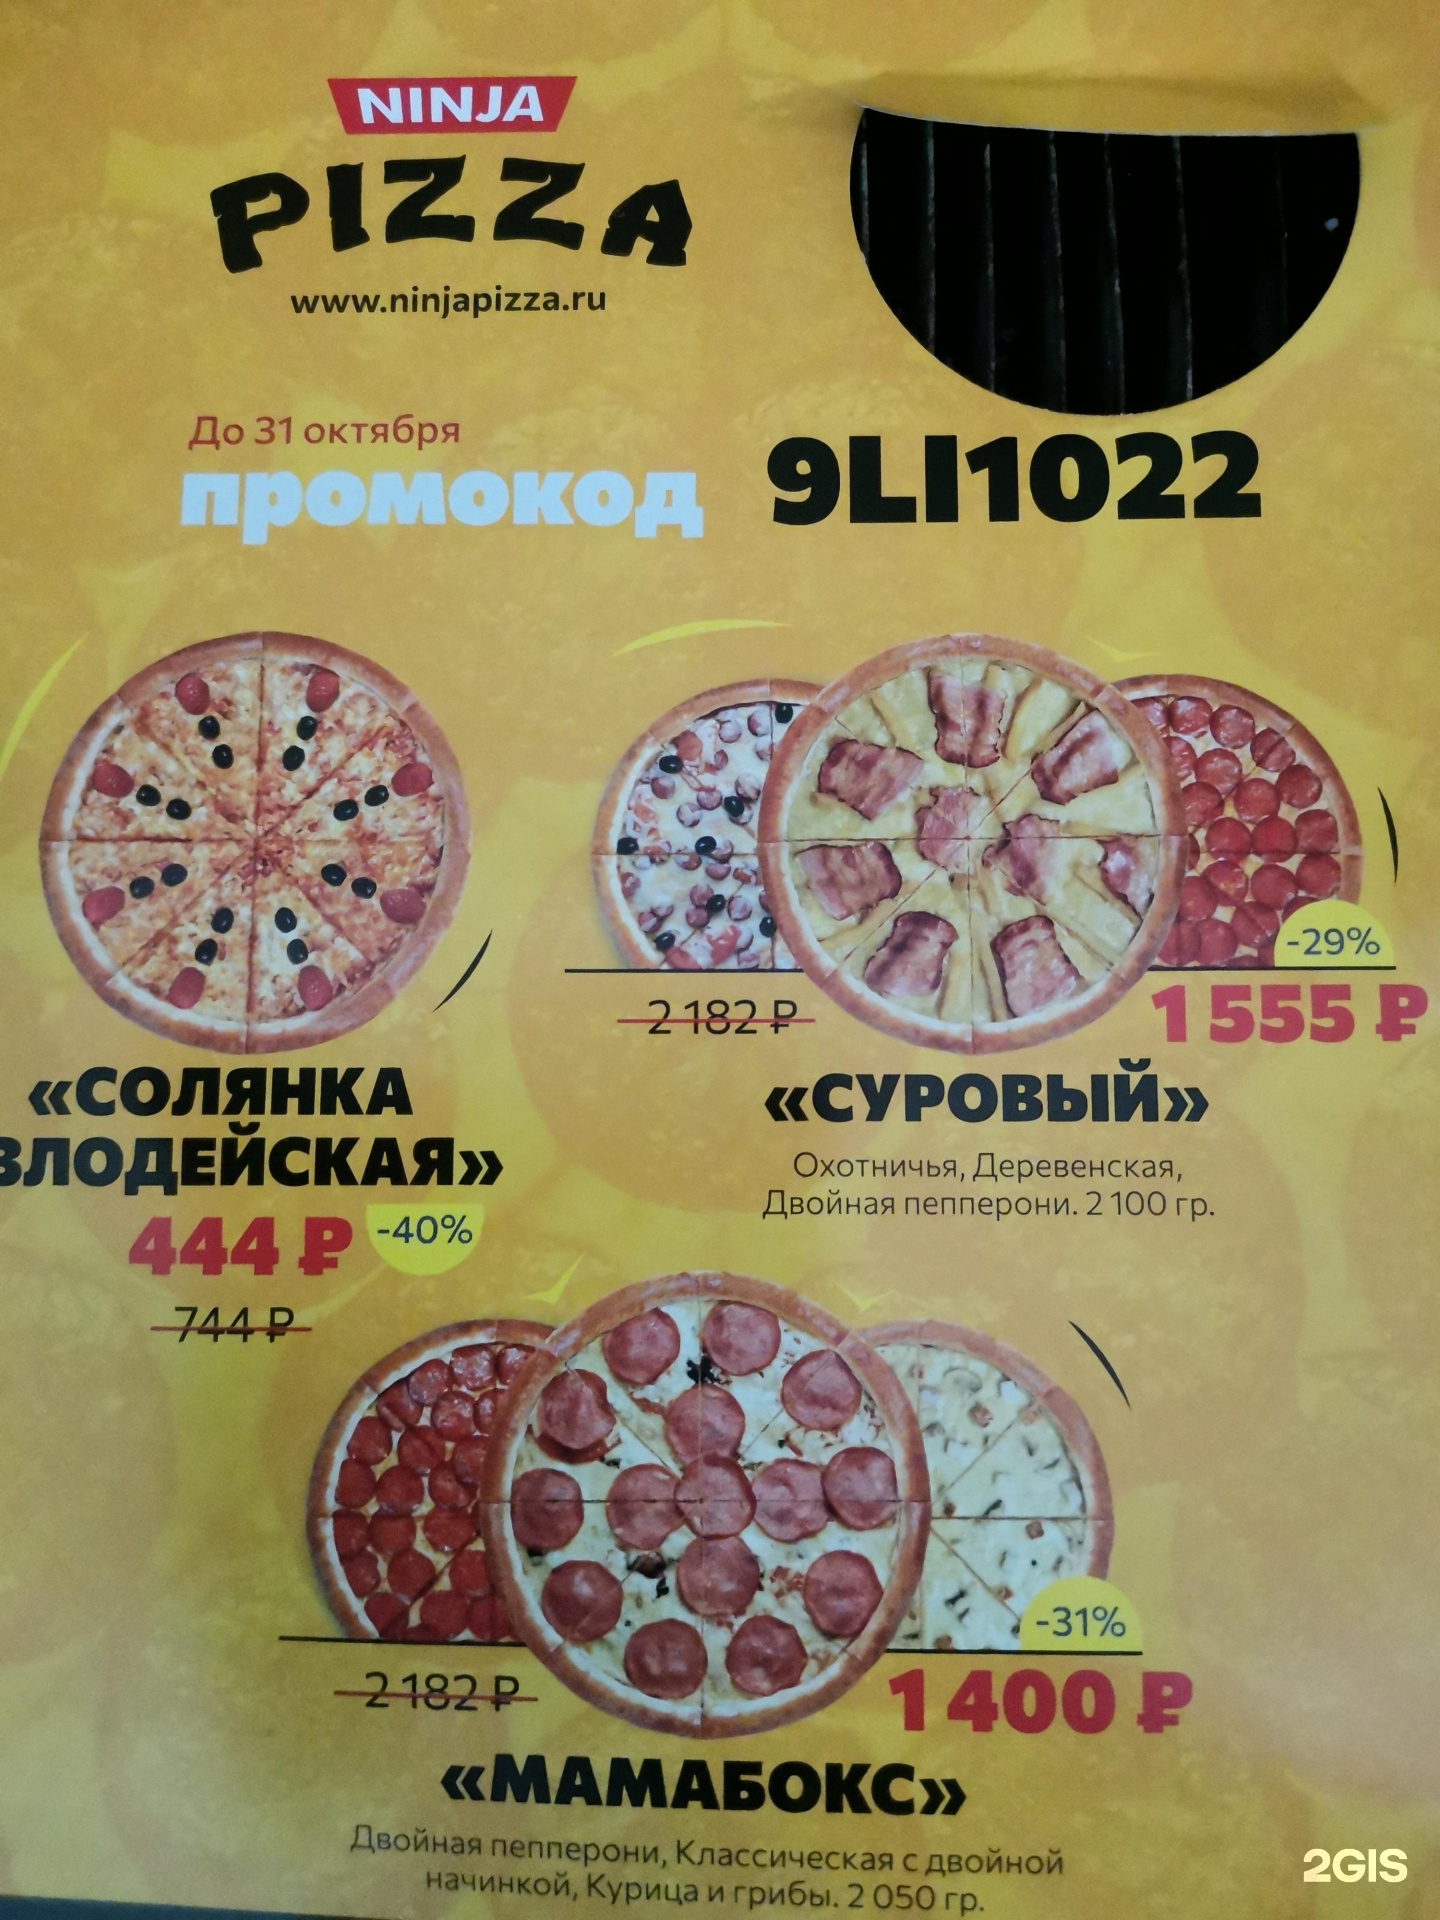 пицца ниндзя красноярск режим работы фото 59